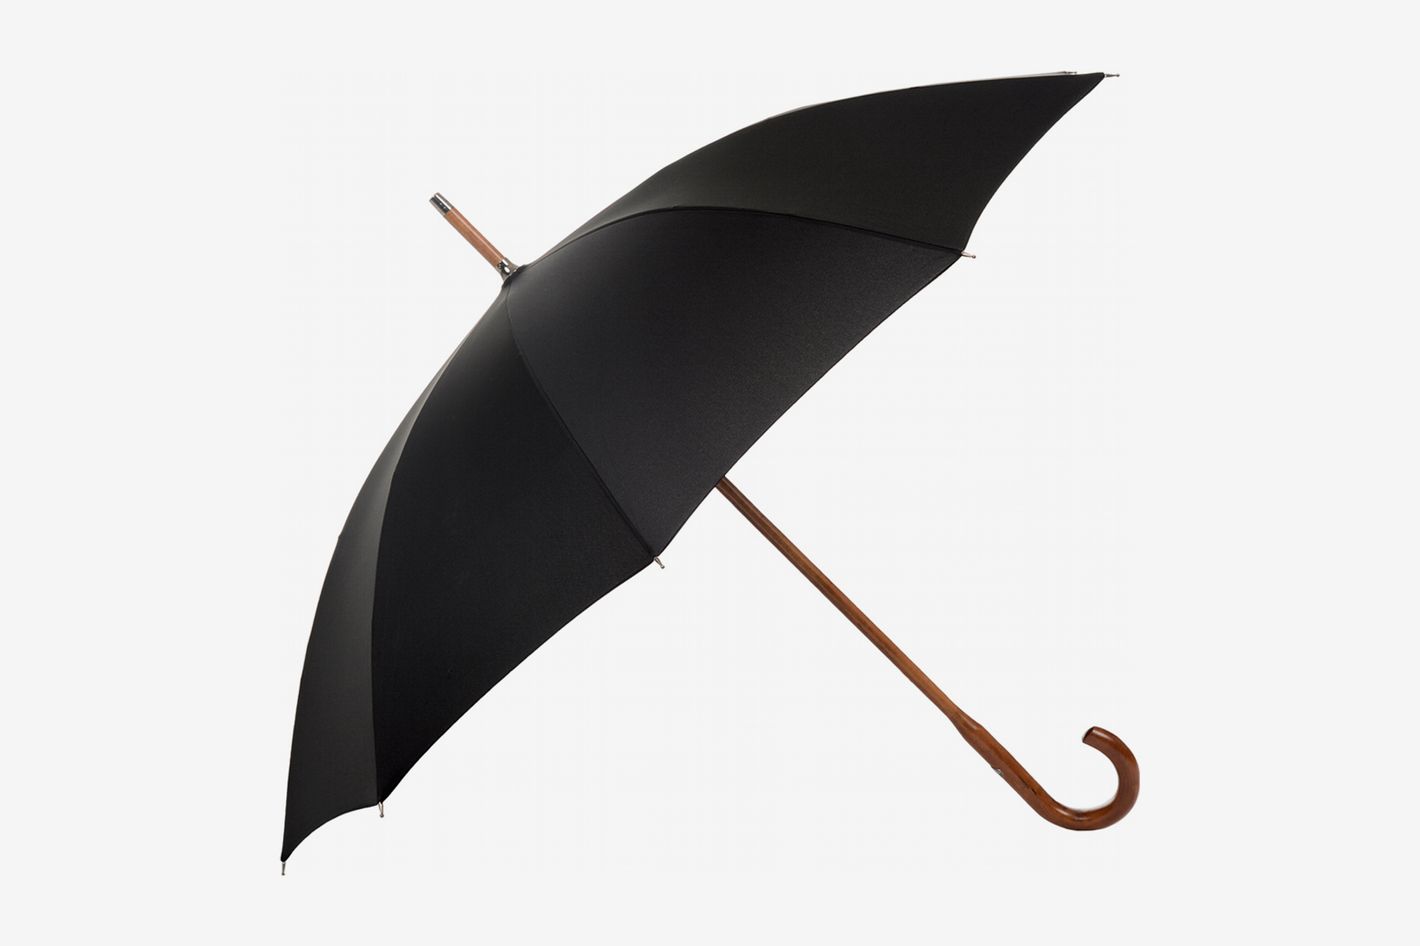 ZhiGe Foldable Umbrella,Automatic Umbrella Three Folding 10 Ribs Wooden Handle Business Men Umbrella Rain Women Parasol Windproof Umbrellas